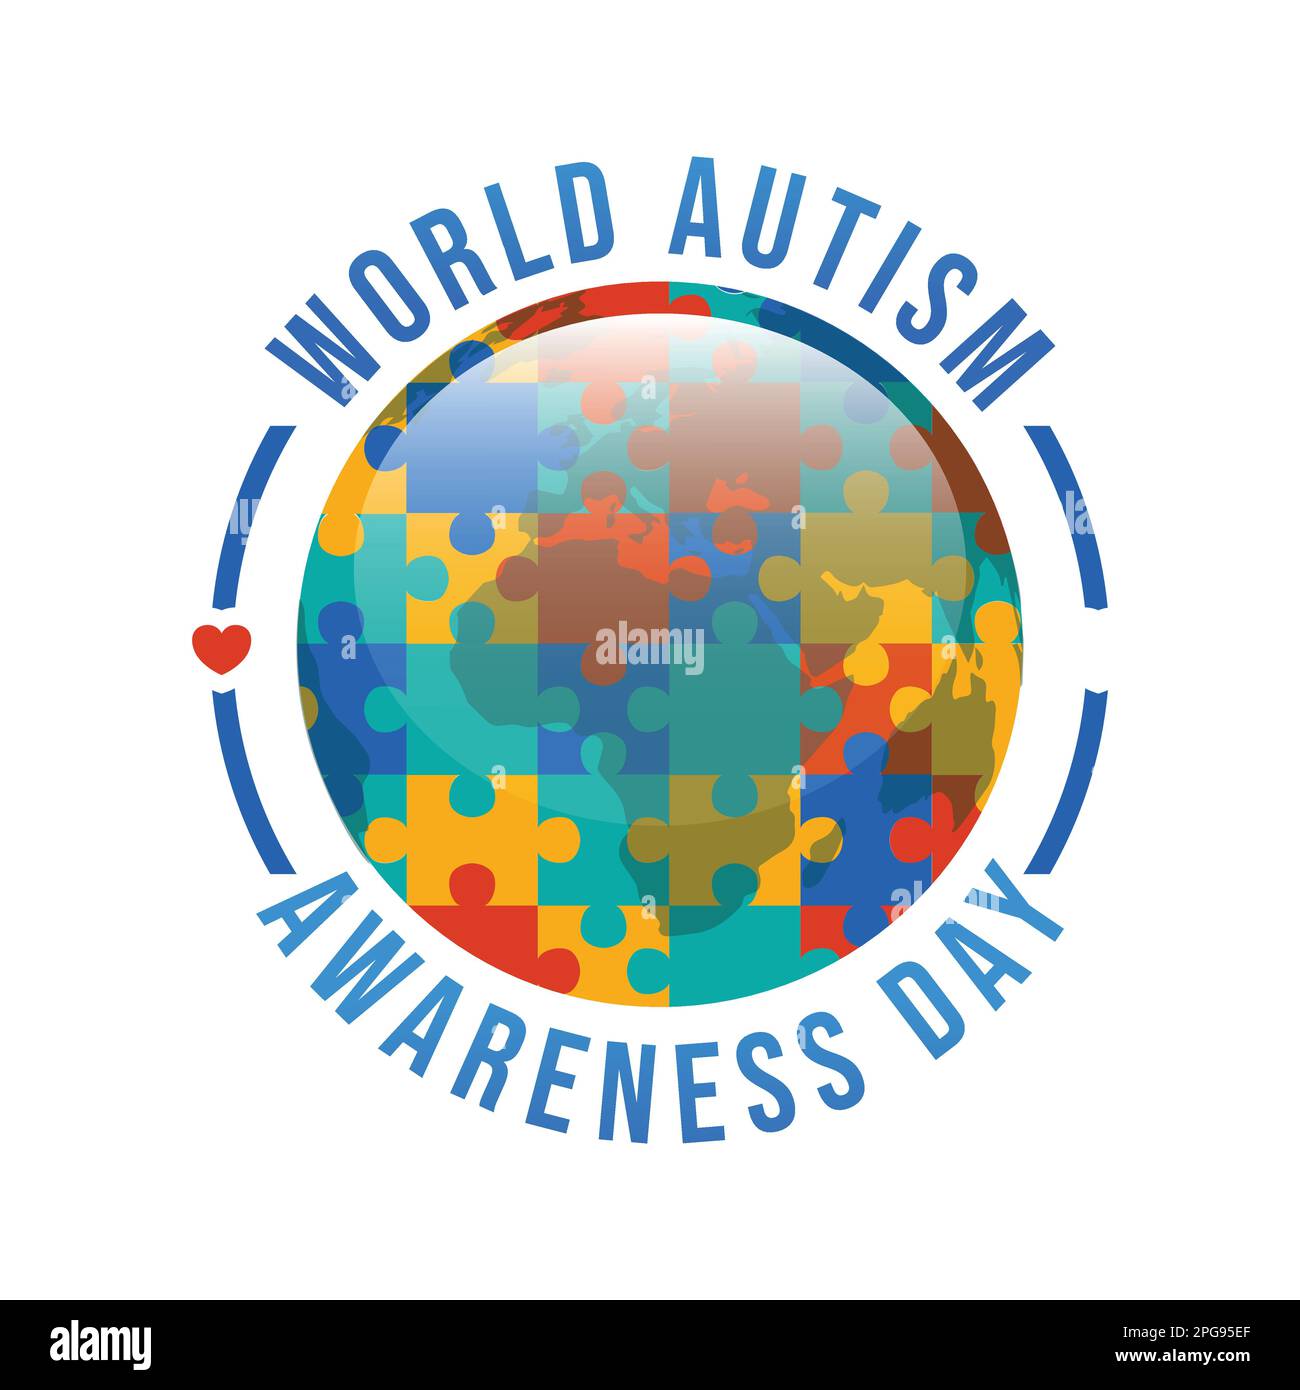 Giornata mondiale di consapevolezza dell'autismo. Immagine vettoriale del concetto di giornata dell'autismo mondiale Illustrazione Vettoriale